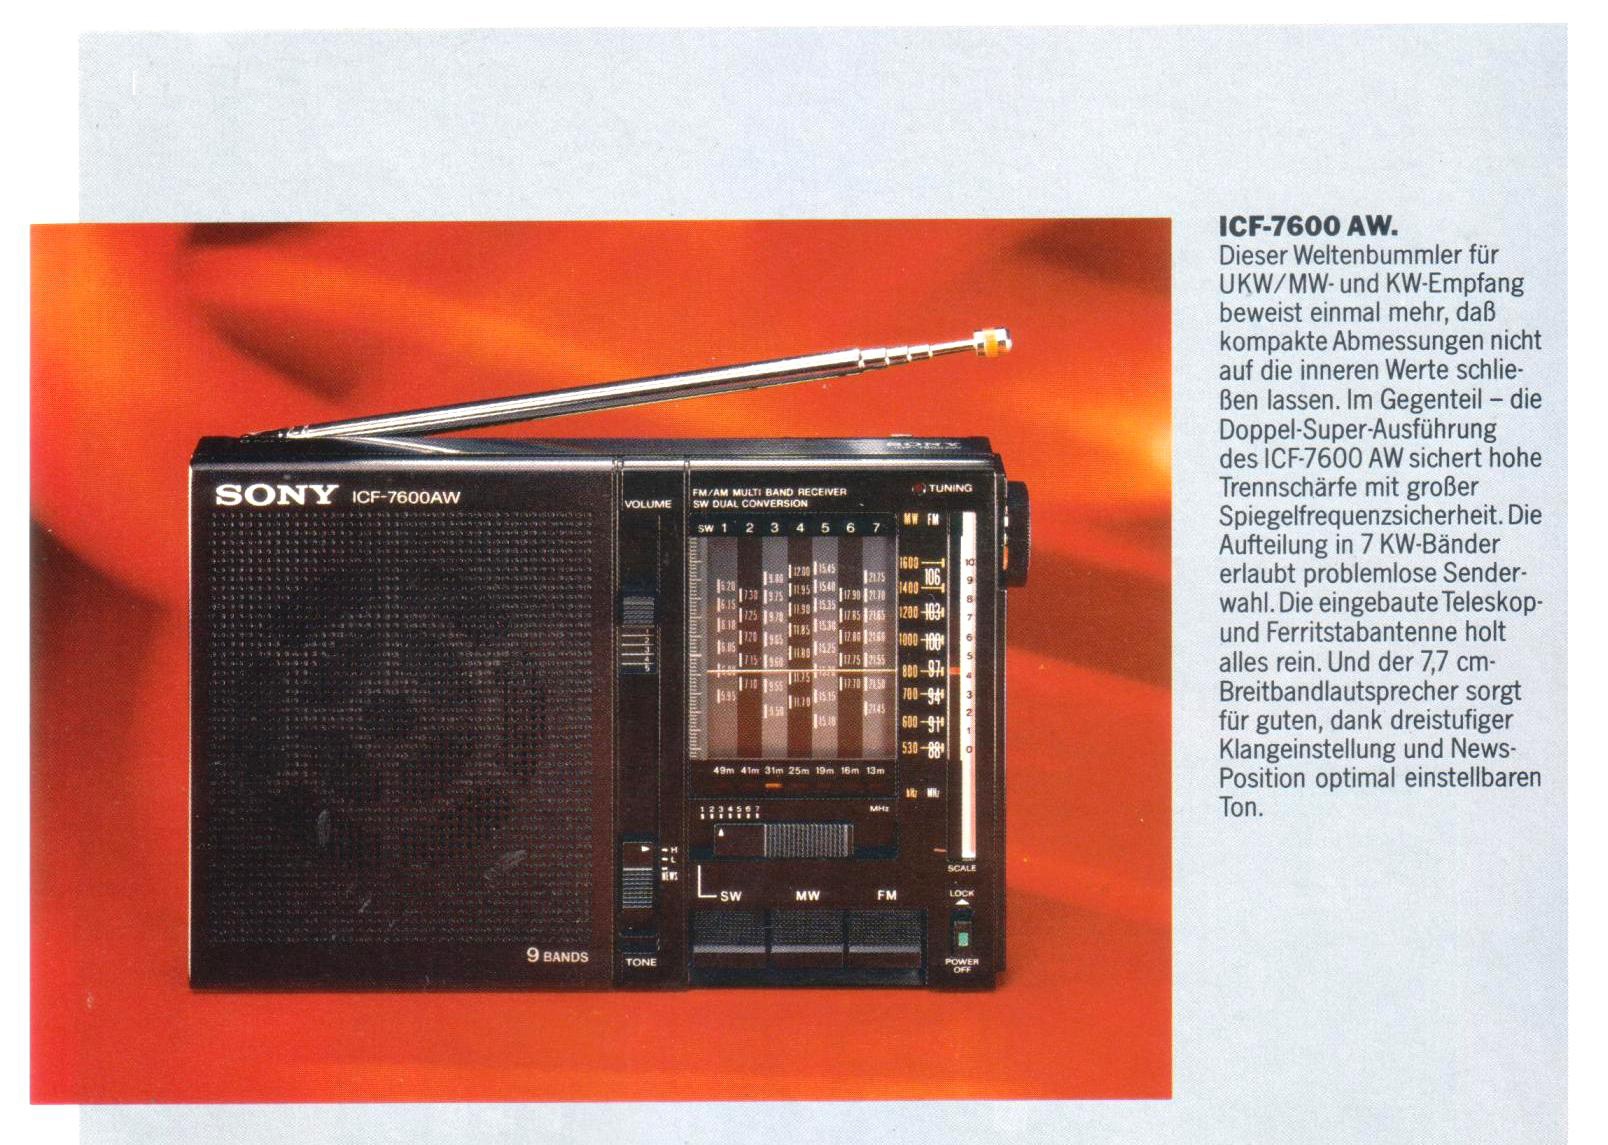 Sony ICF-7600 AW-Prospekt-1988.jpg